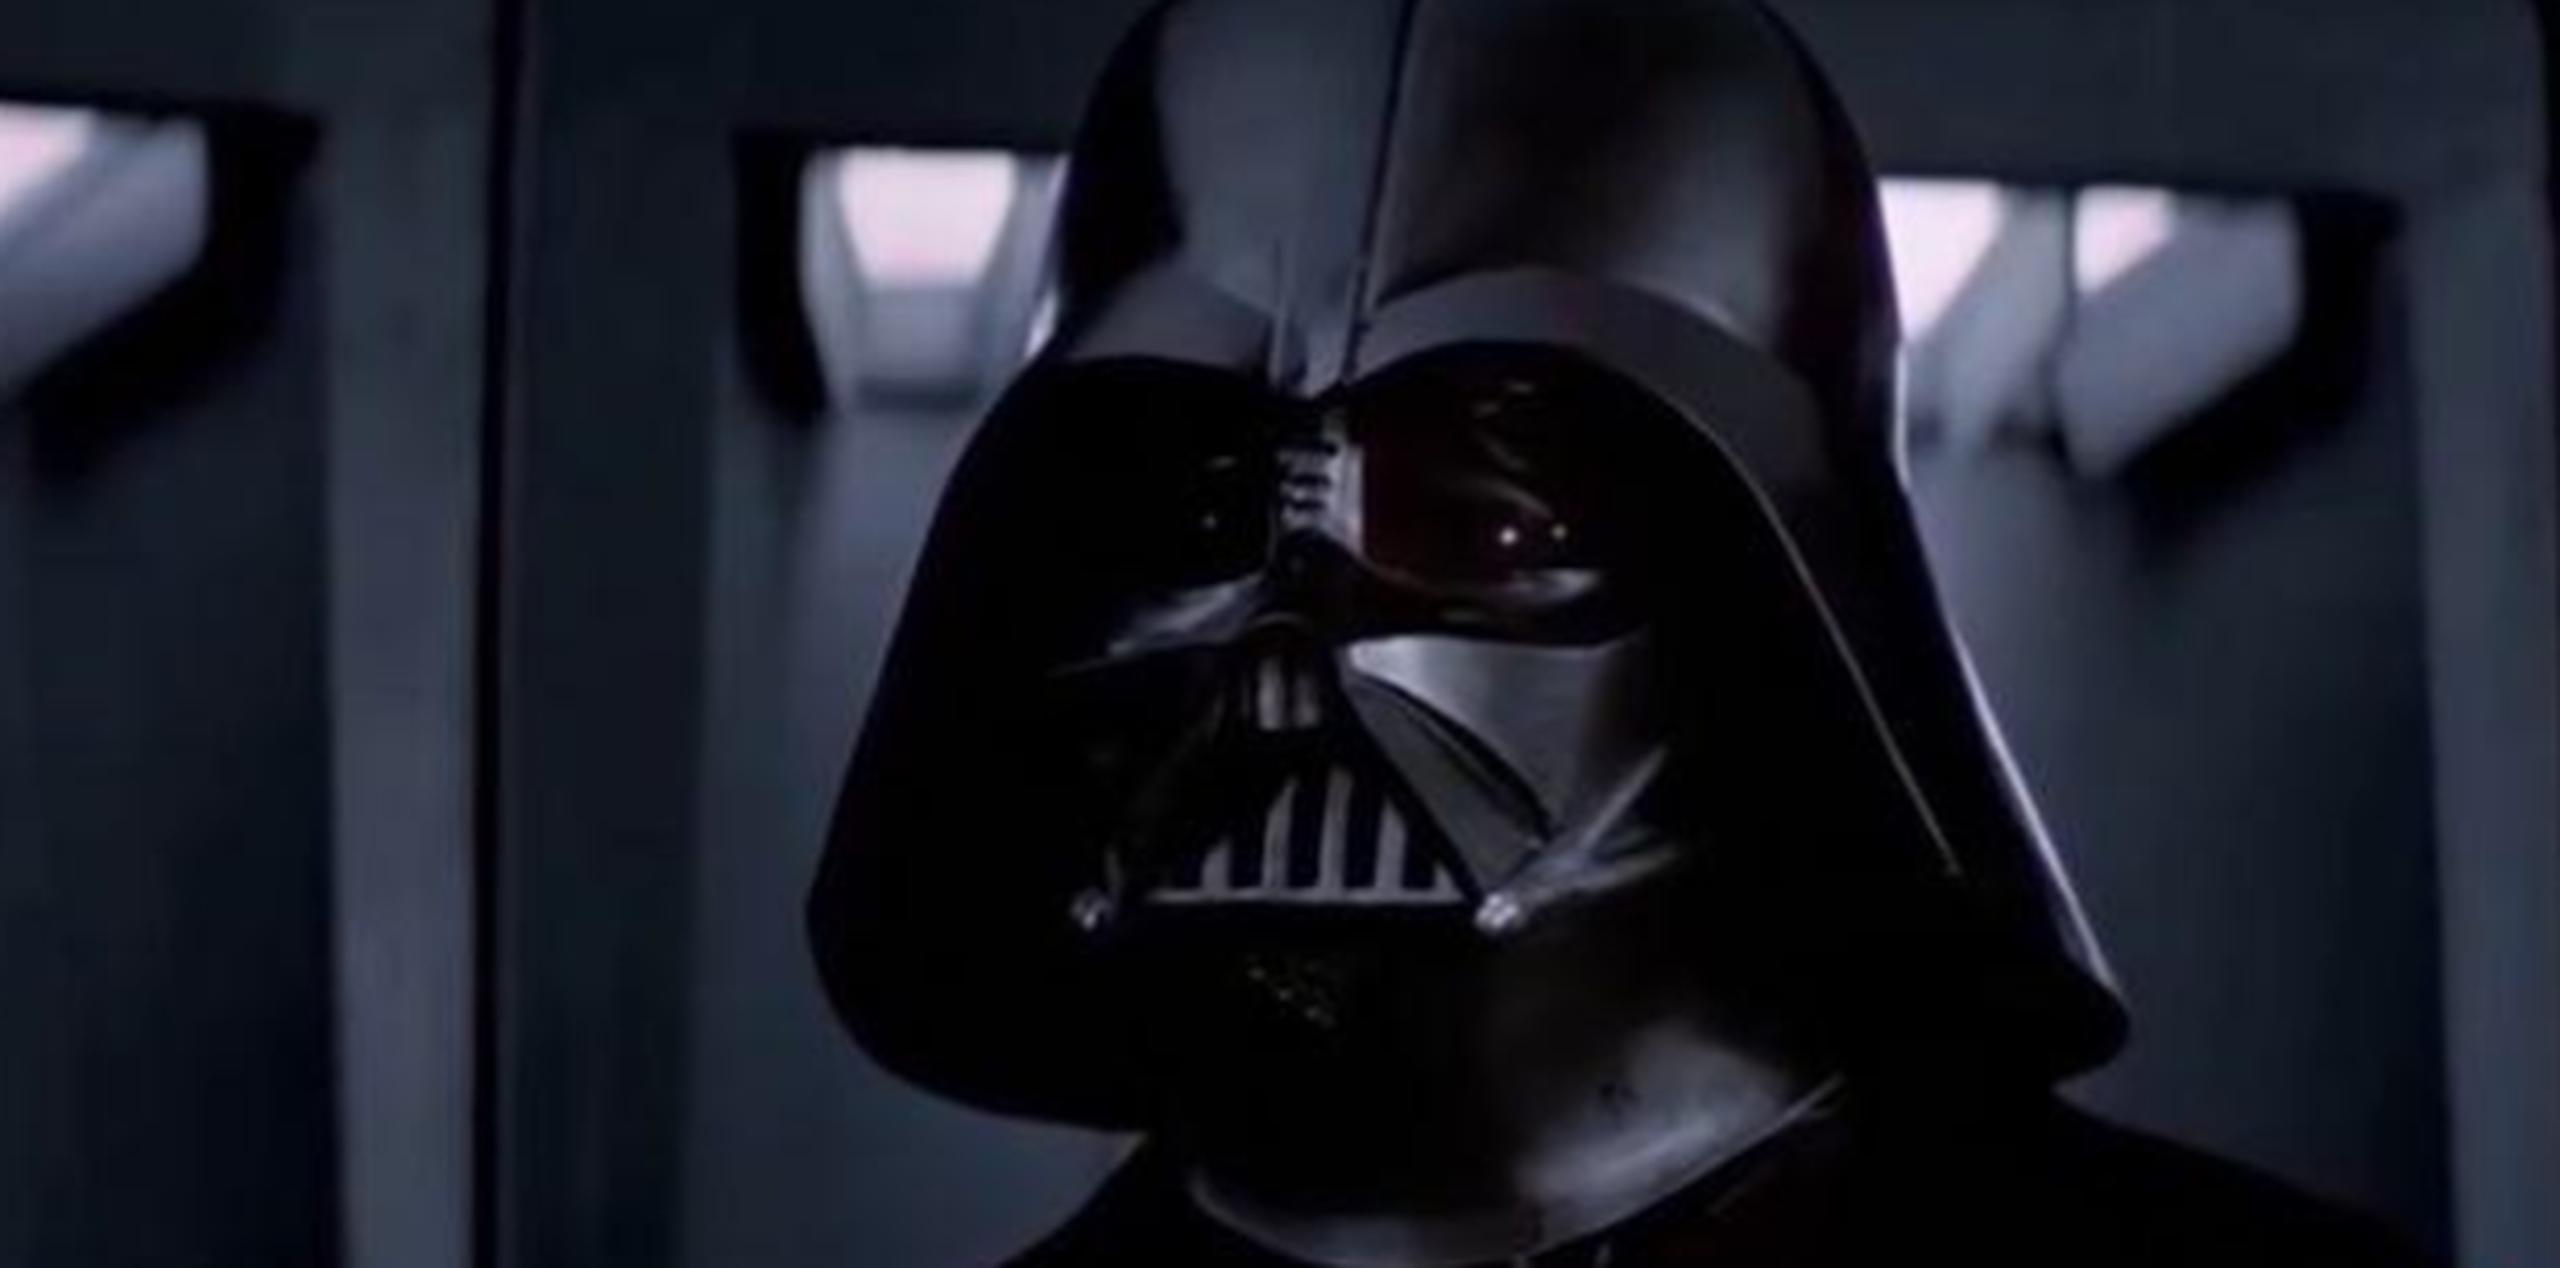 Quizás quien ha tenido más razones para detestar la saga es David Prowse, el actor que interpretó a Darh Vader en tres películas de la saga. (Foto/Captura)